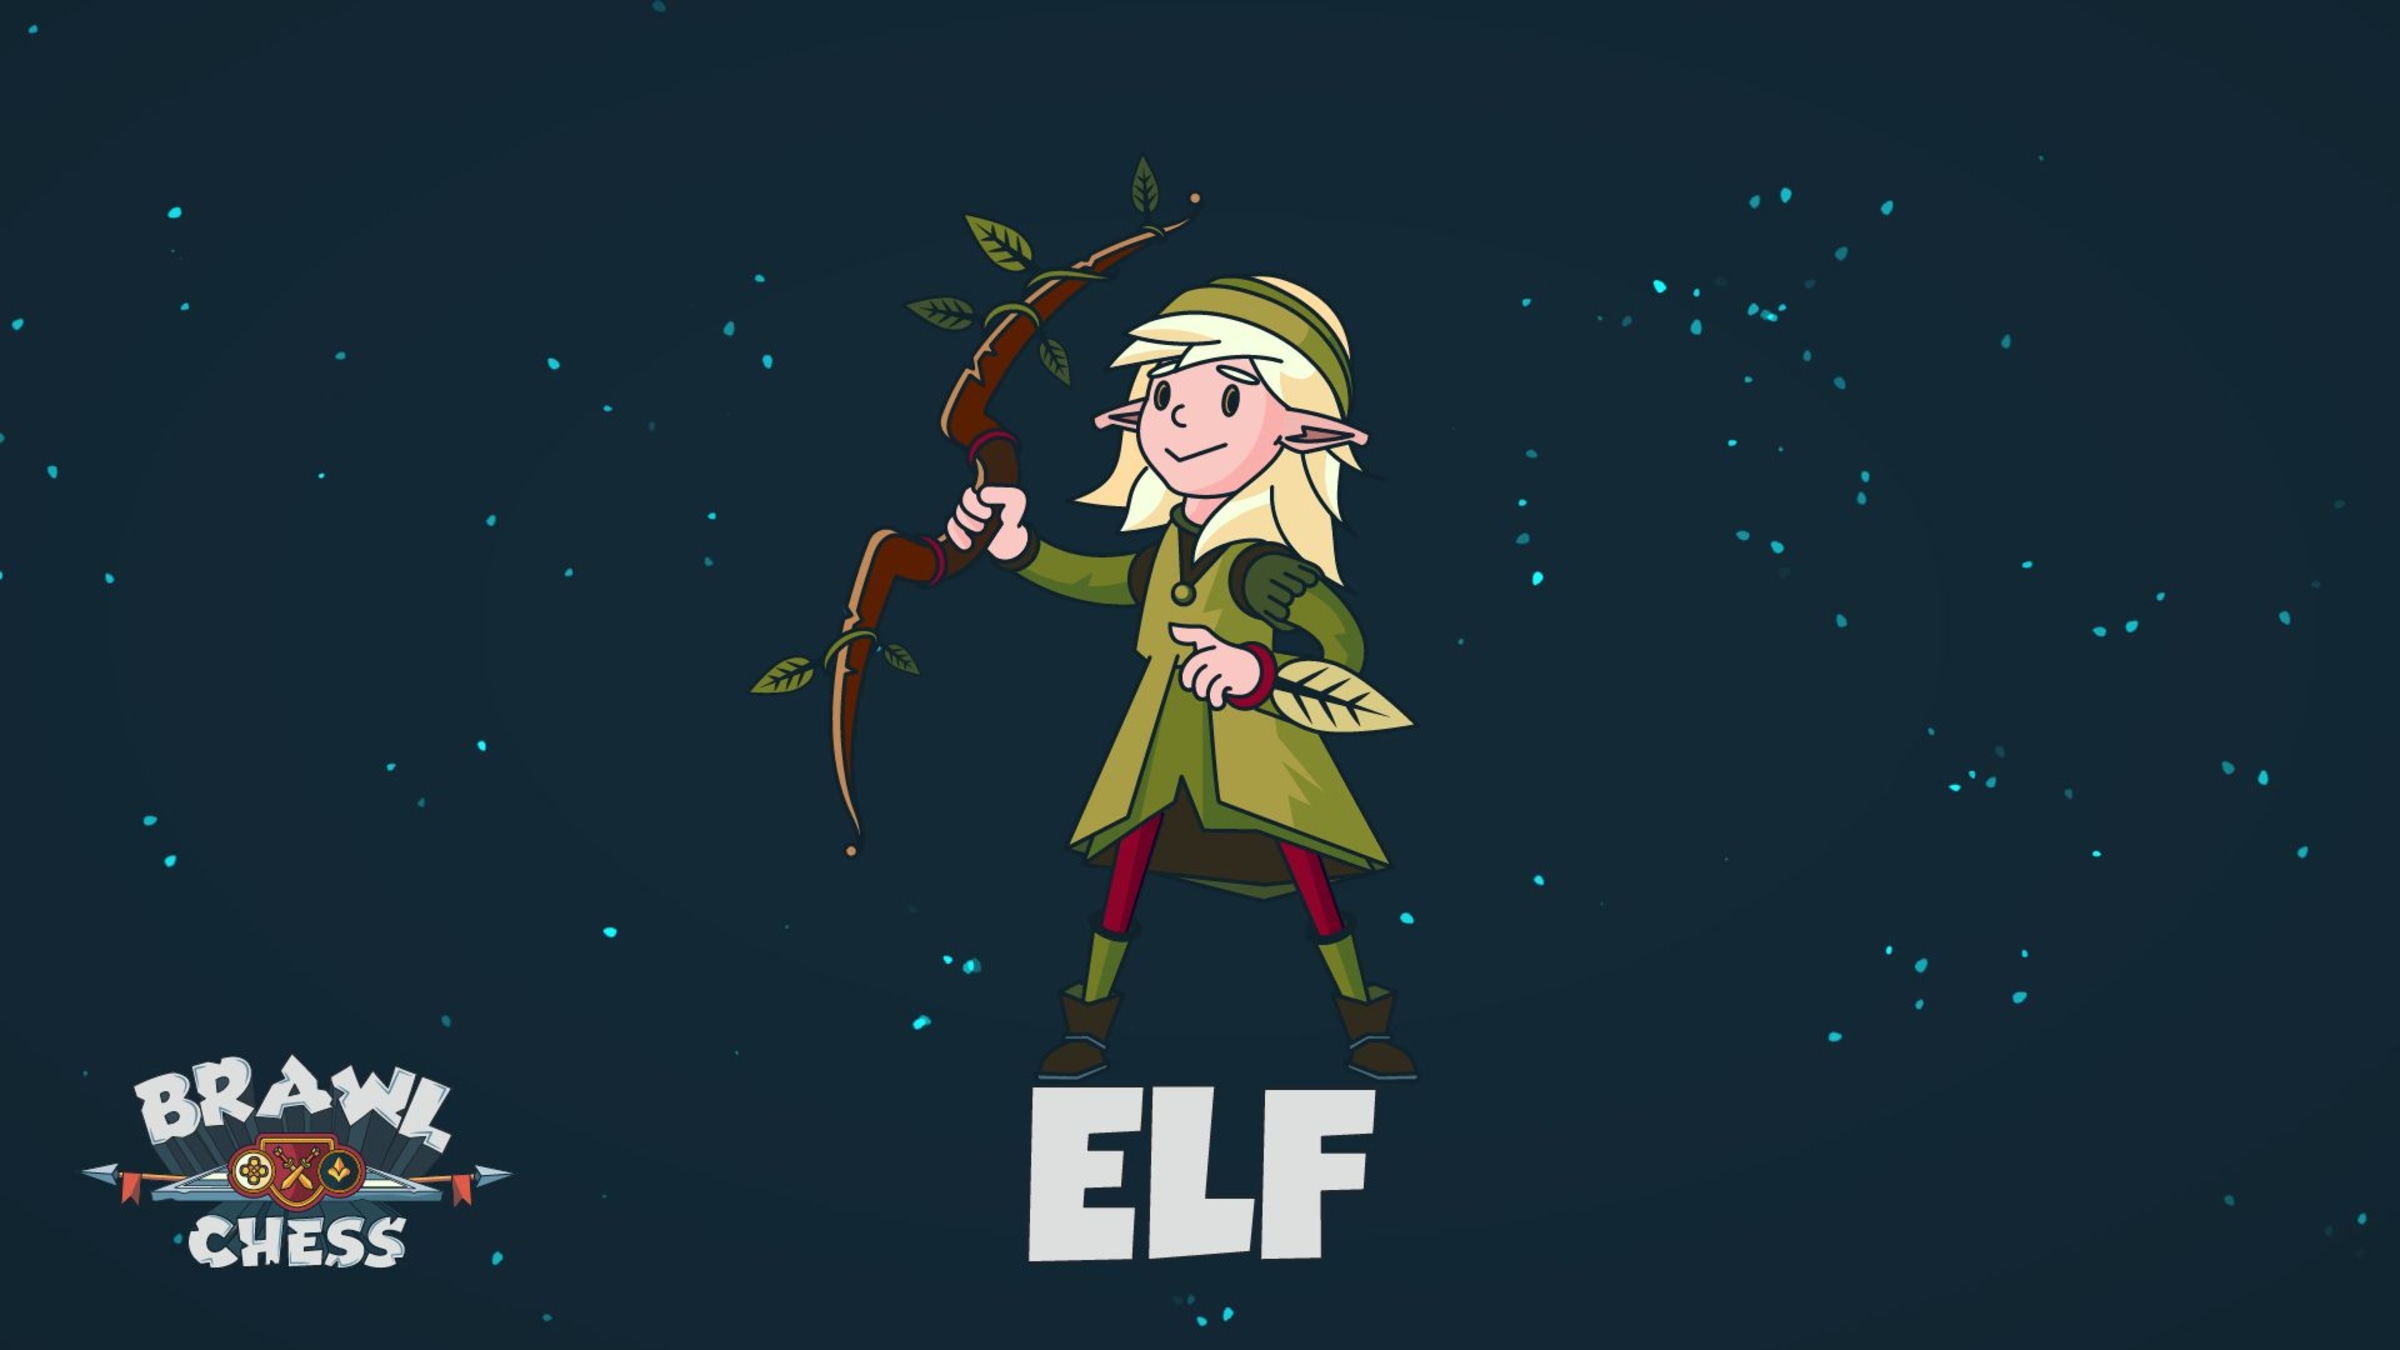 Elf for Nintendo Switch - Nintendo Official Site